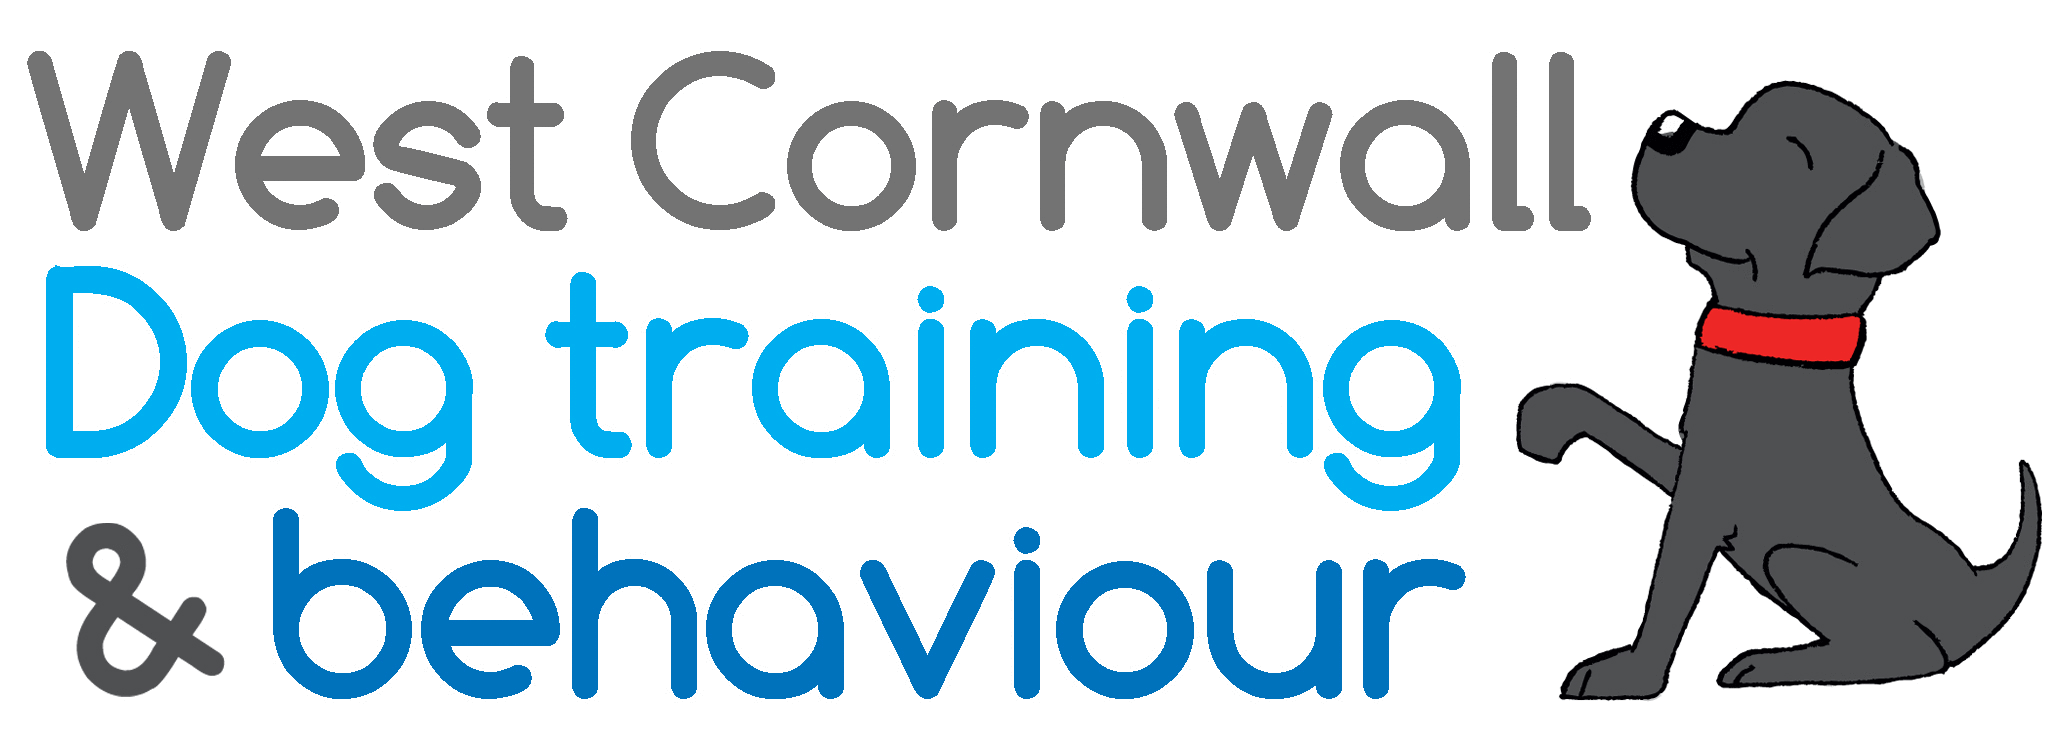 West Cornwall Dog Training School